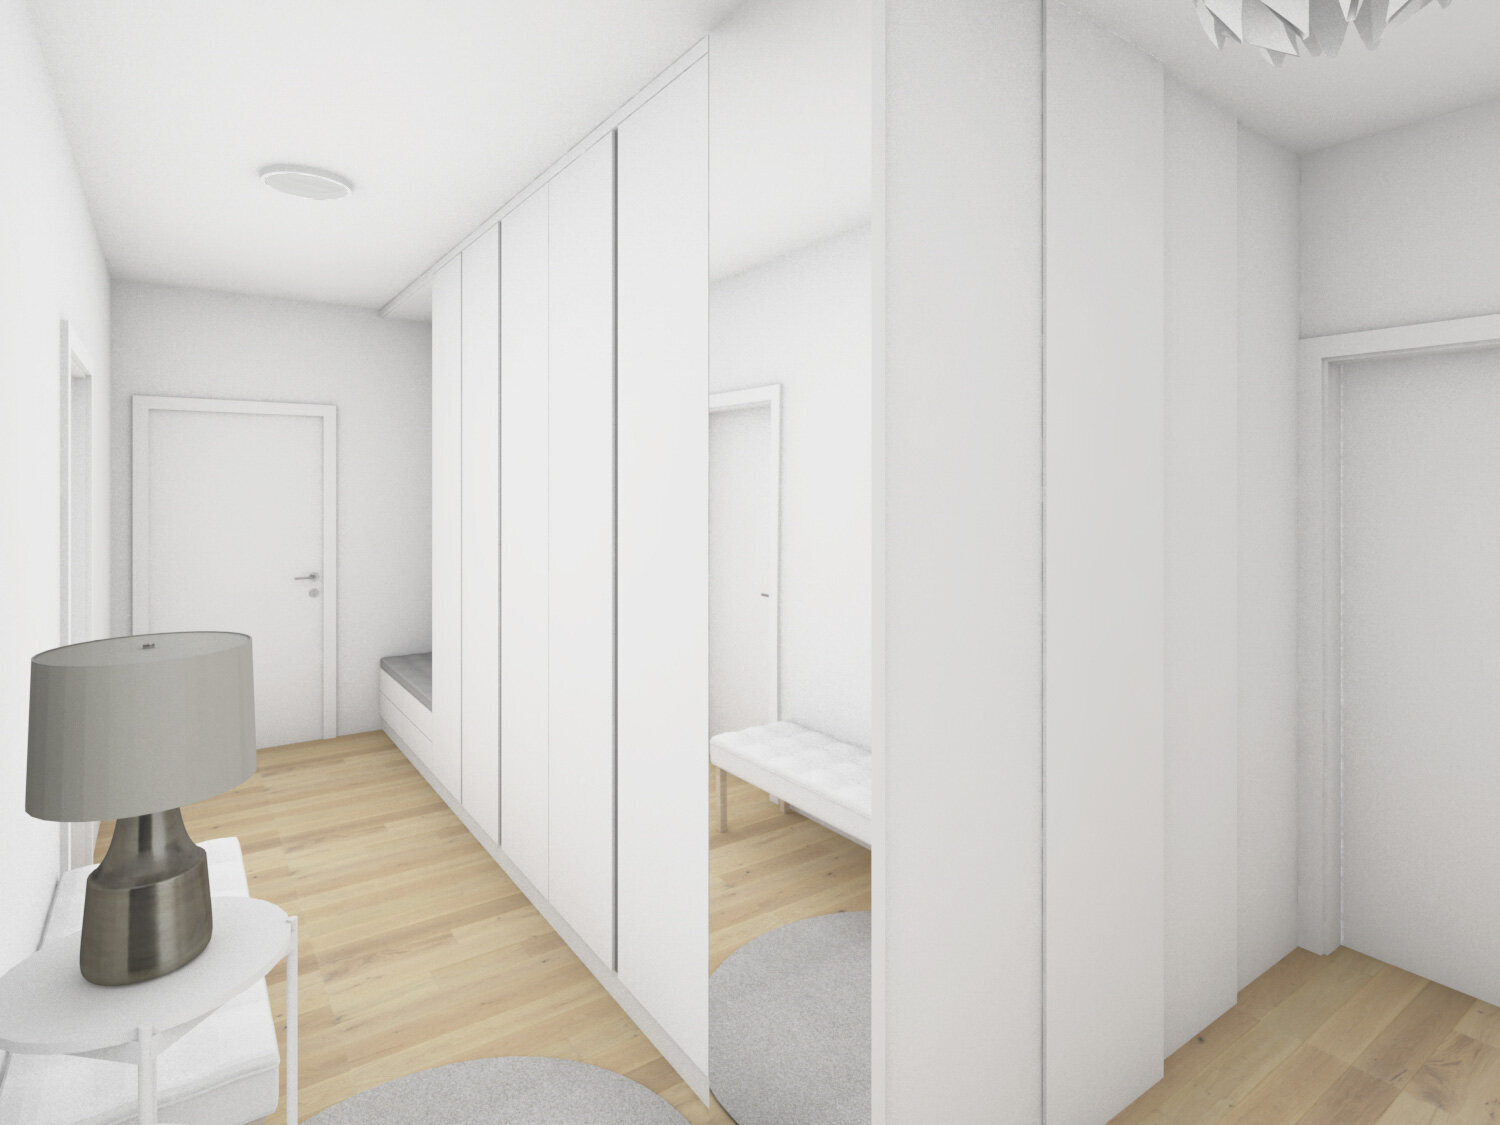 návrh interiéru masážní centrum